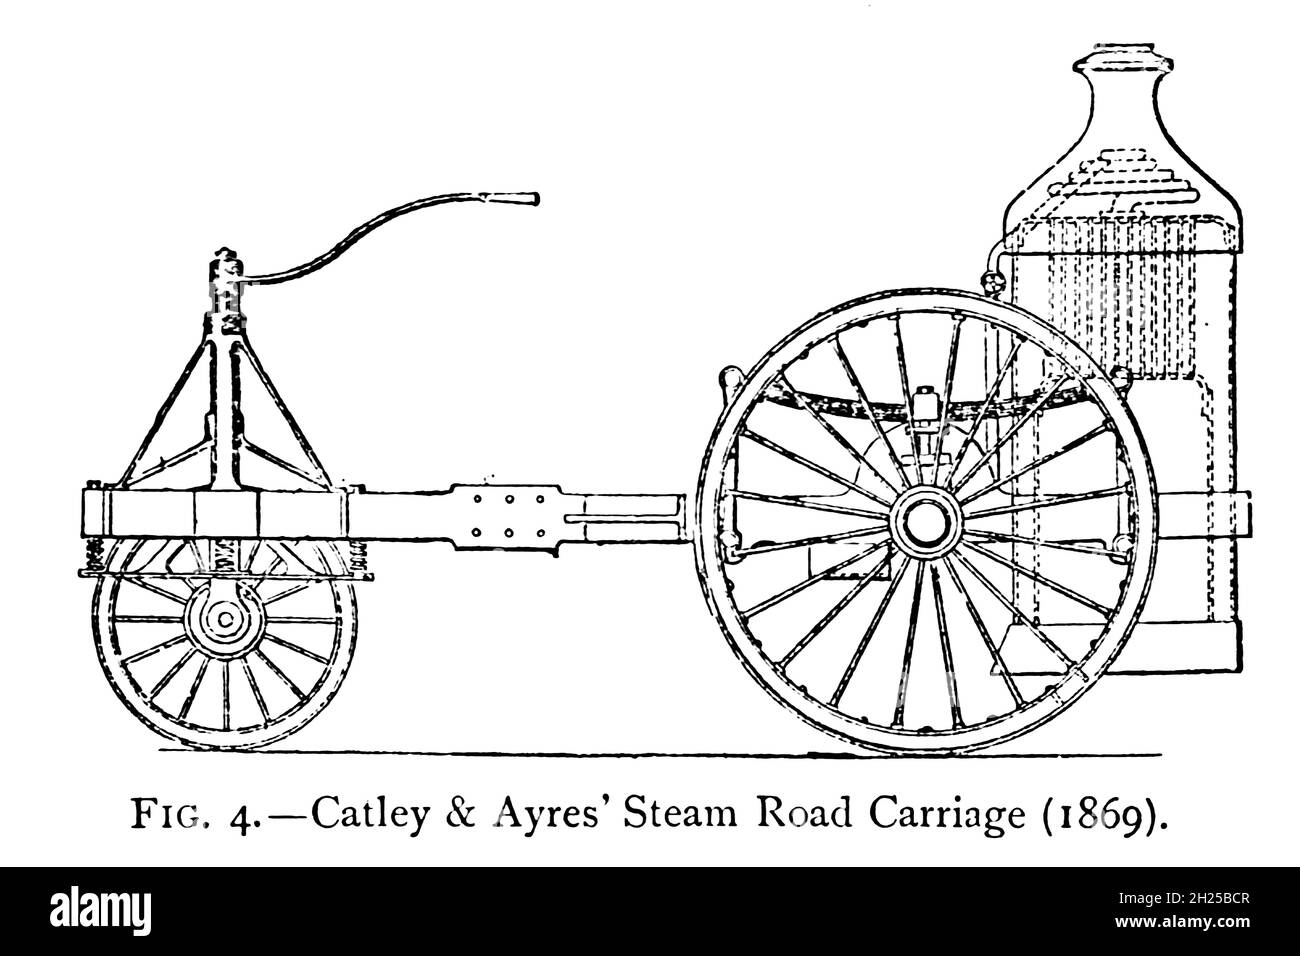 Design of Catley & Ayres' Steam Road Carriage (1869) ein kleines dreirädriges Fahrzeug, angetrieben von einem horizontalen Zweizylindermotor, der die Hinterachse durch Stirnradgetriebe trieb, nur ein Hinterrad wurde angetrieben, das andere drehte sich frei auf der Achse. Auf der Rückseite wurde ein vertikaler Feuerrohrkessel mit einem polierten Kupfergehäuse über dem Feuerraum und dem Kamin montiert, der Kessel wurde in ein Mahagoni-Gehäuse eingefasst. Das Gewicht betrug nur 19 cwt, und das Vorderrad wurde zum Lenken verwendet. Aus dem Buch "Motorwagen; oder, Kraftwagen für gemeinsame Straßen" von Alexander James Wallis-Tayler, Published in London, by Cr Stockfoto